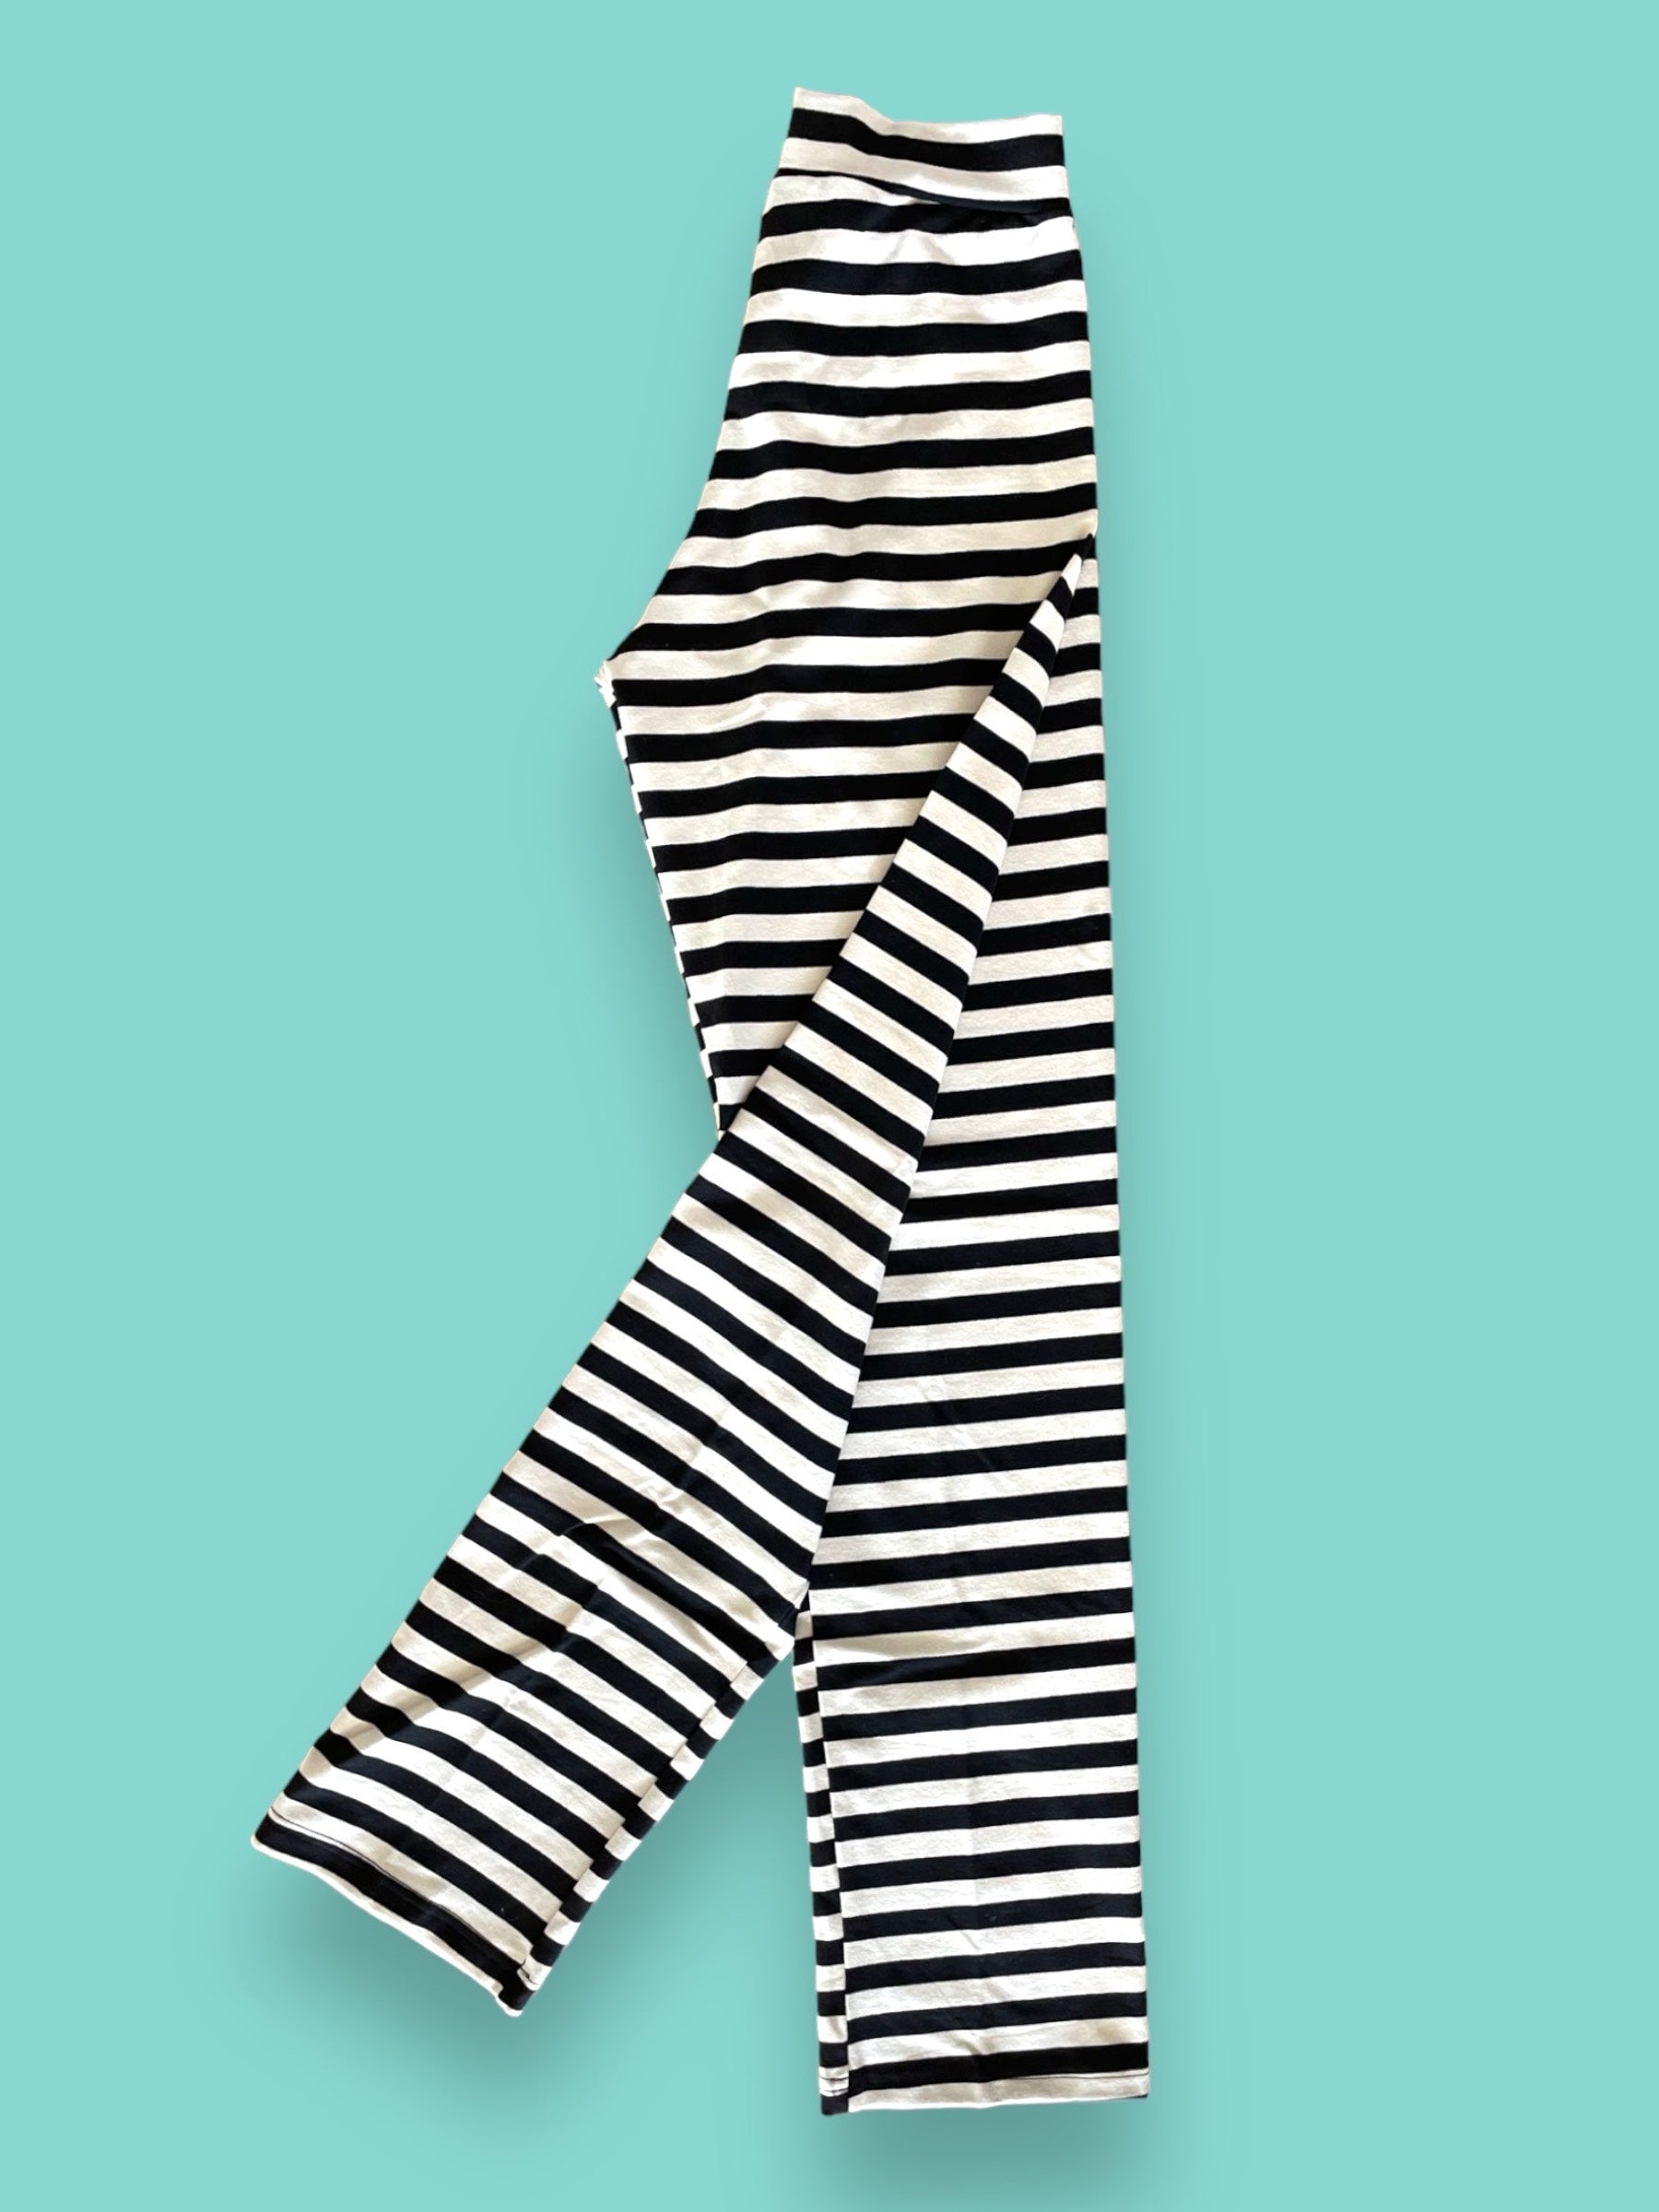 Vertical Striped Black&White 3/4 Length / Full Length LEGGINGS S- XXL